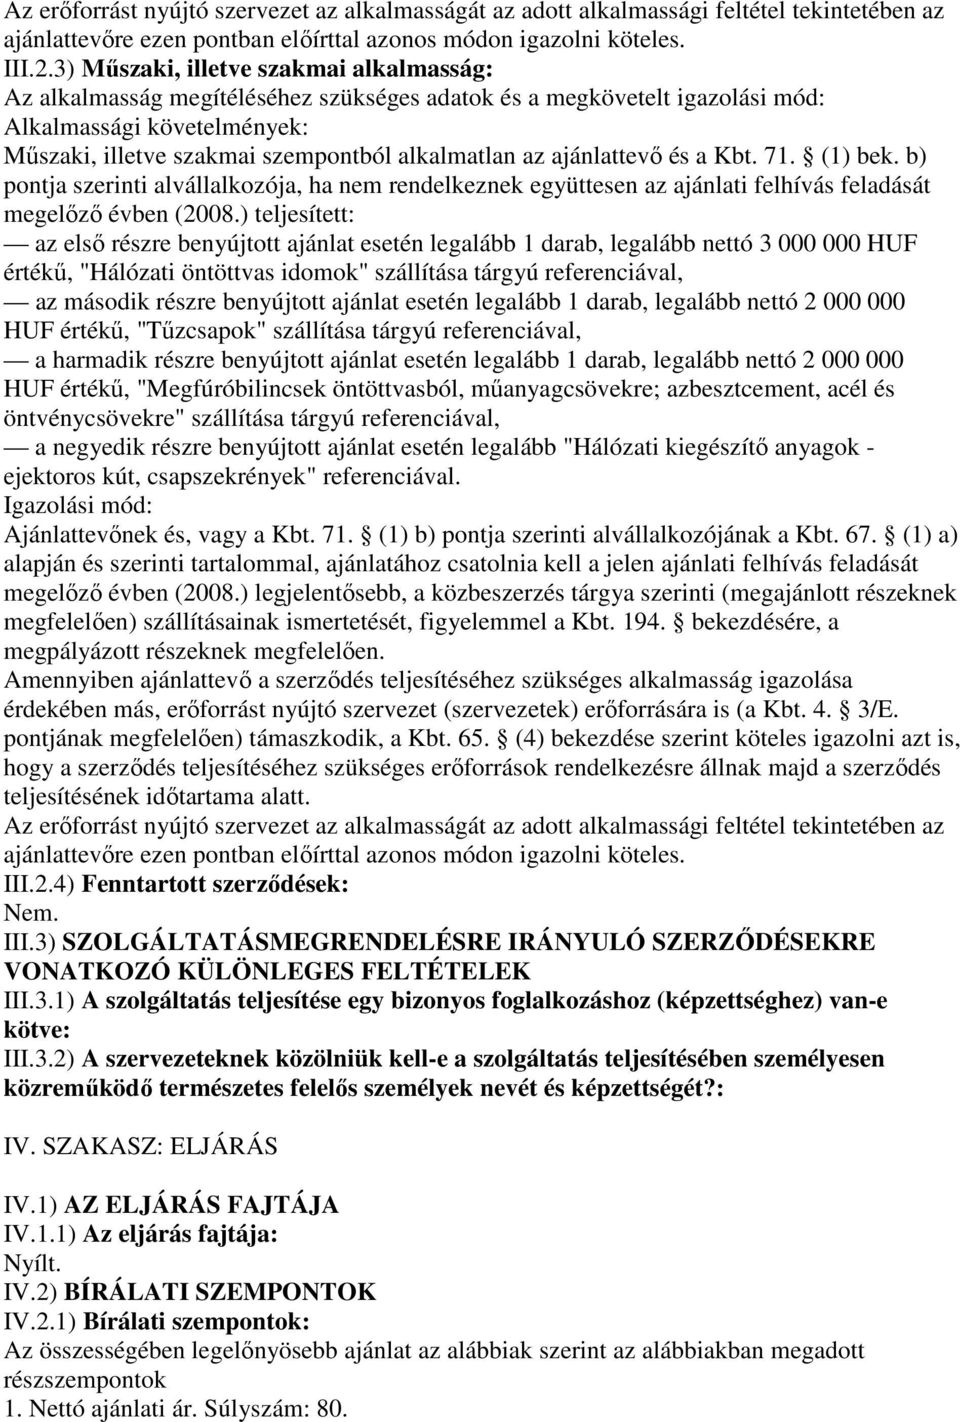 ajánlattevı és a Kbt. 71. (1) bek. b) pontja szerinti alvállalkozója, ha nem rendelkeznek együttesen az ajánlati felhívás feladását megelızı évben (2008.